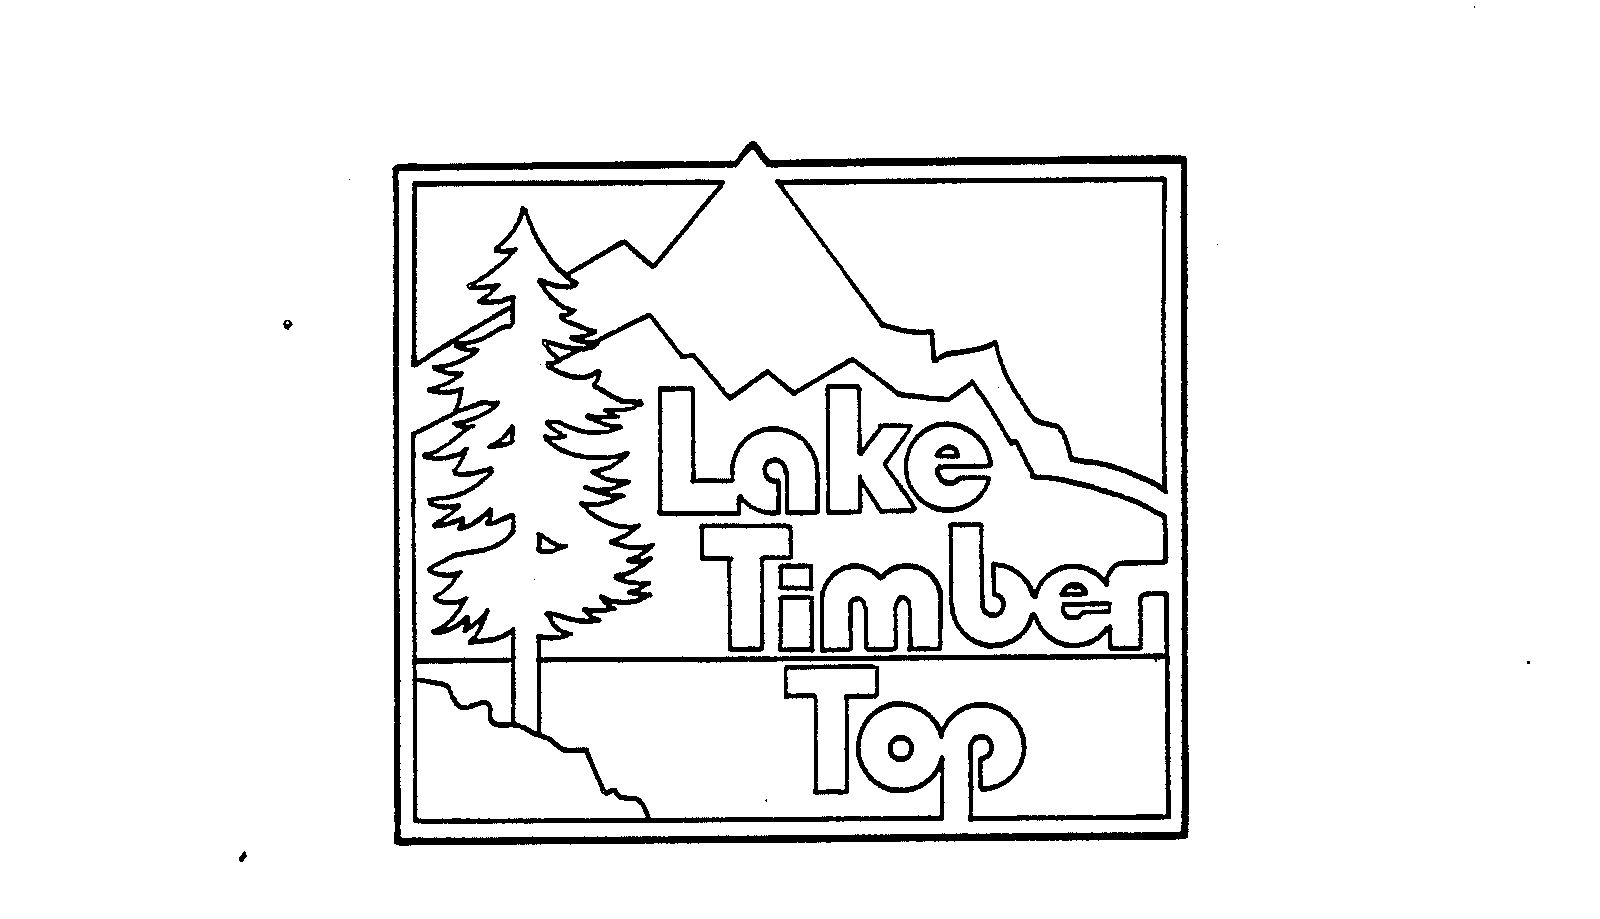  LAKE TIMBER TOP